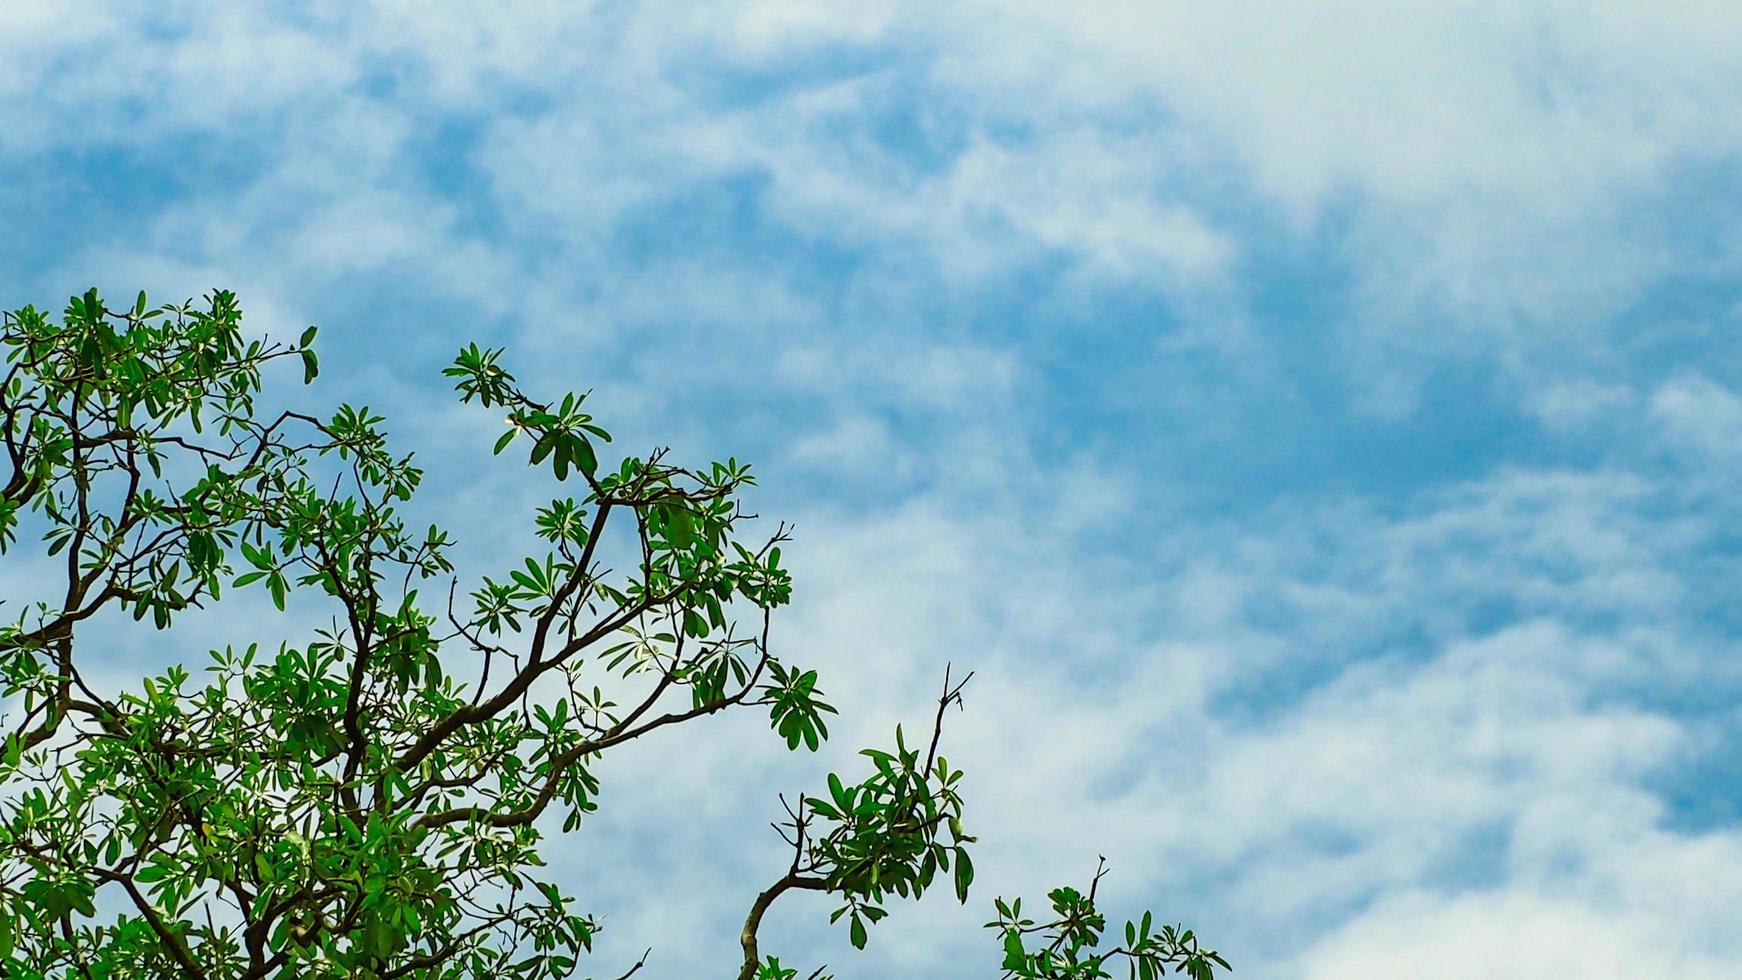 árbol con rama y hojas verdes aisladas en el cielo azul y nubes blancas en el día del sol. foto